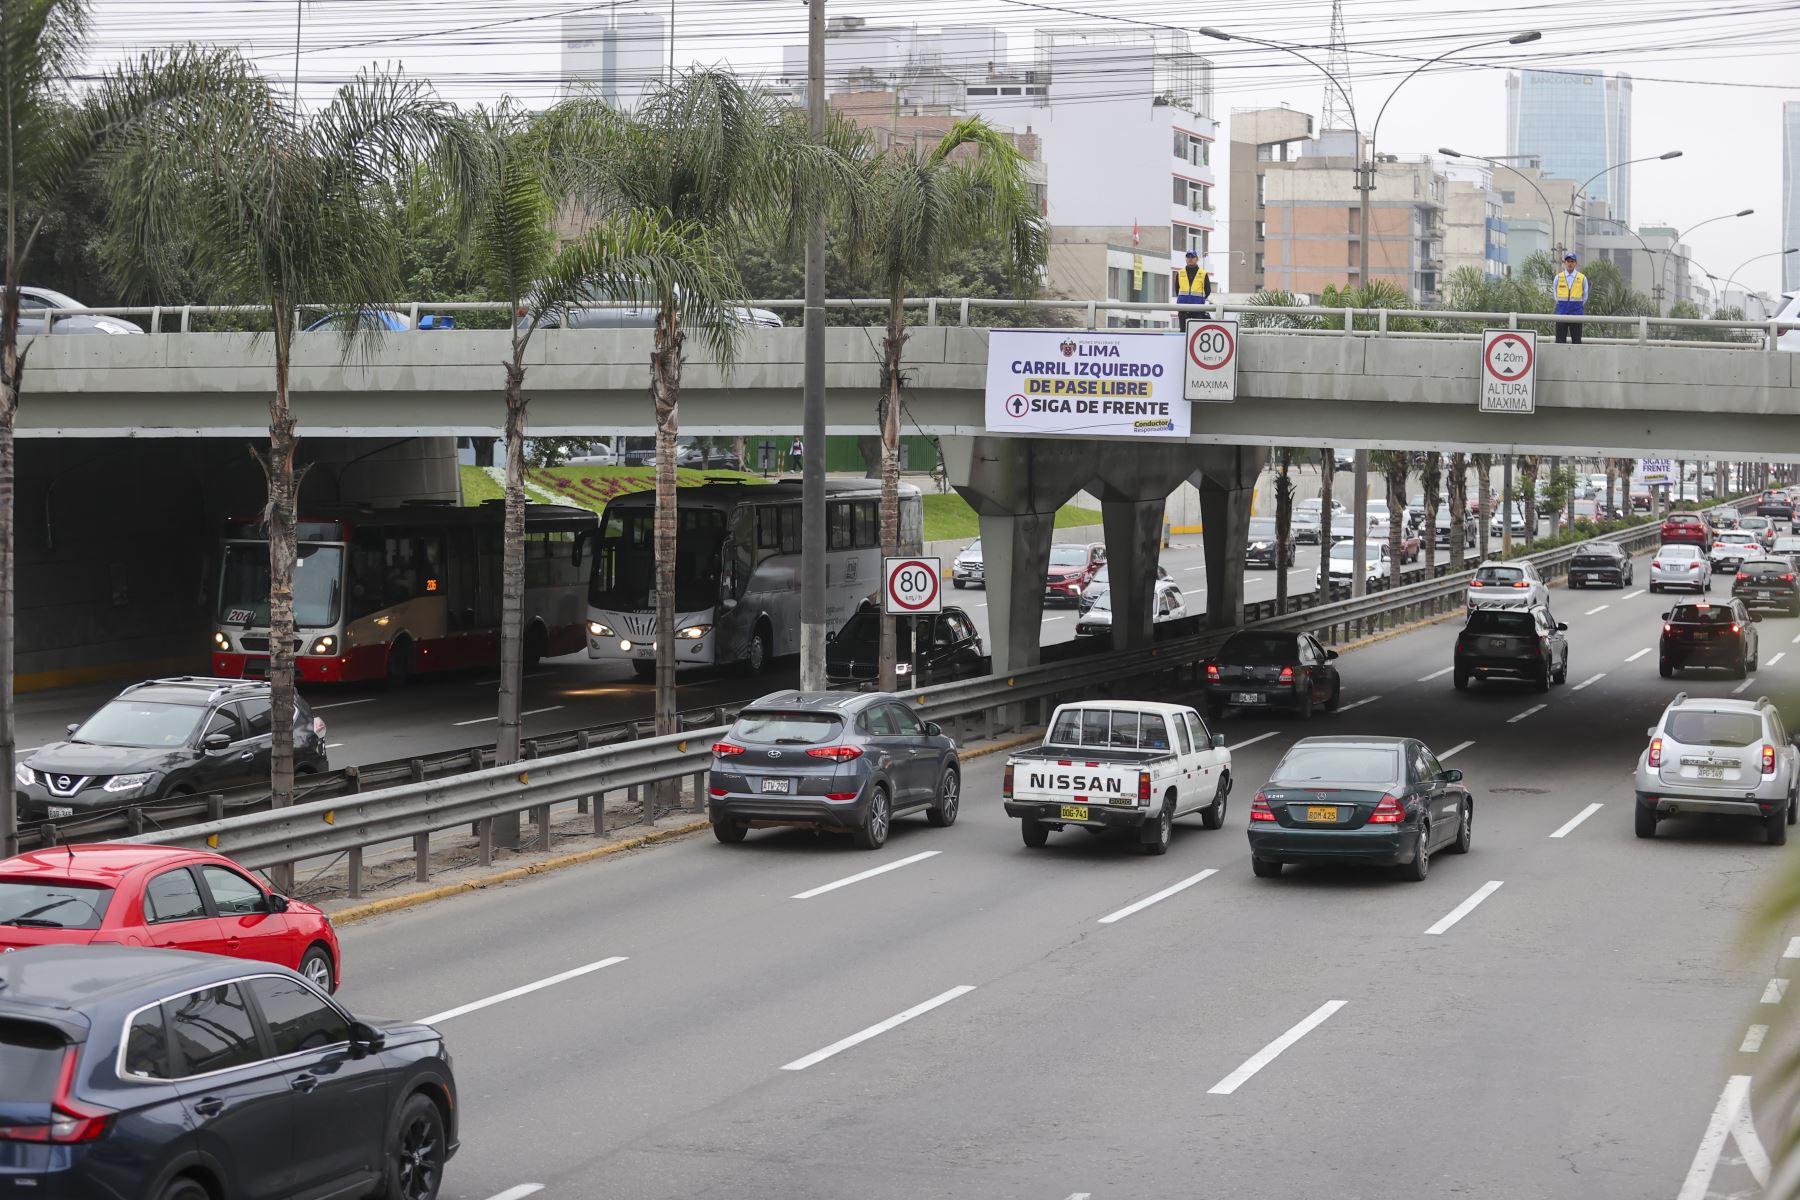 En el marco de las acciones de alto impacto (AAI), la Municipalidad Metropolitana de Lima (MML) implementó el carril de pase libre en la avenida Javier Prado. Foto: ANDINA/Juan Carlos Guzmán Negrini.